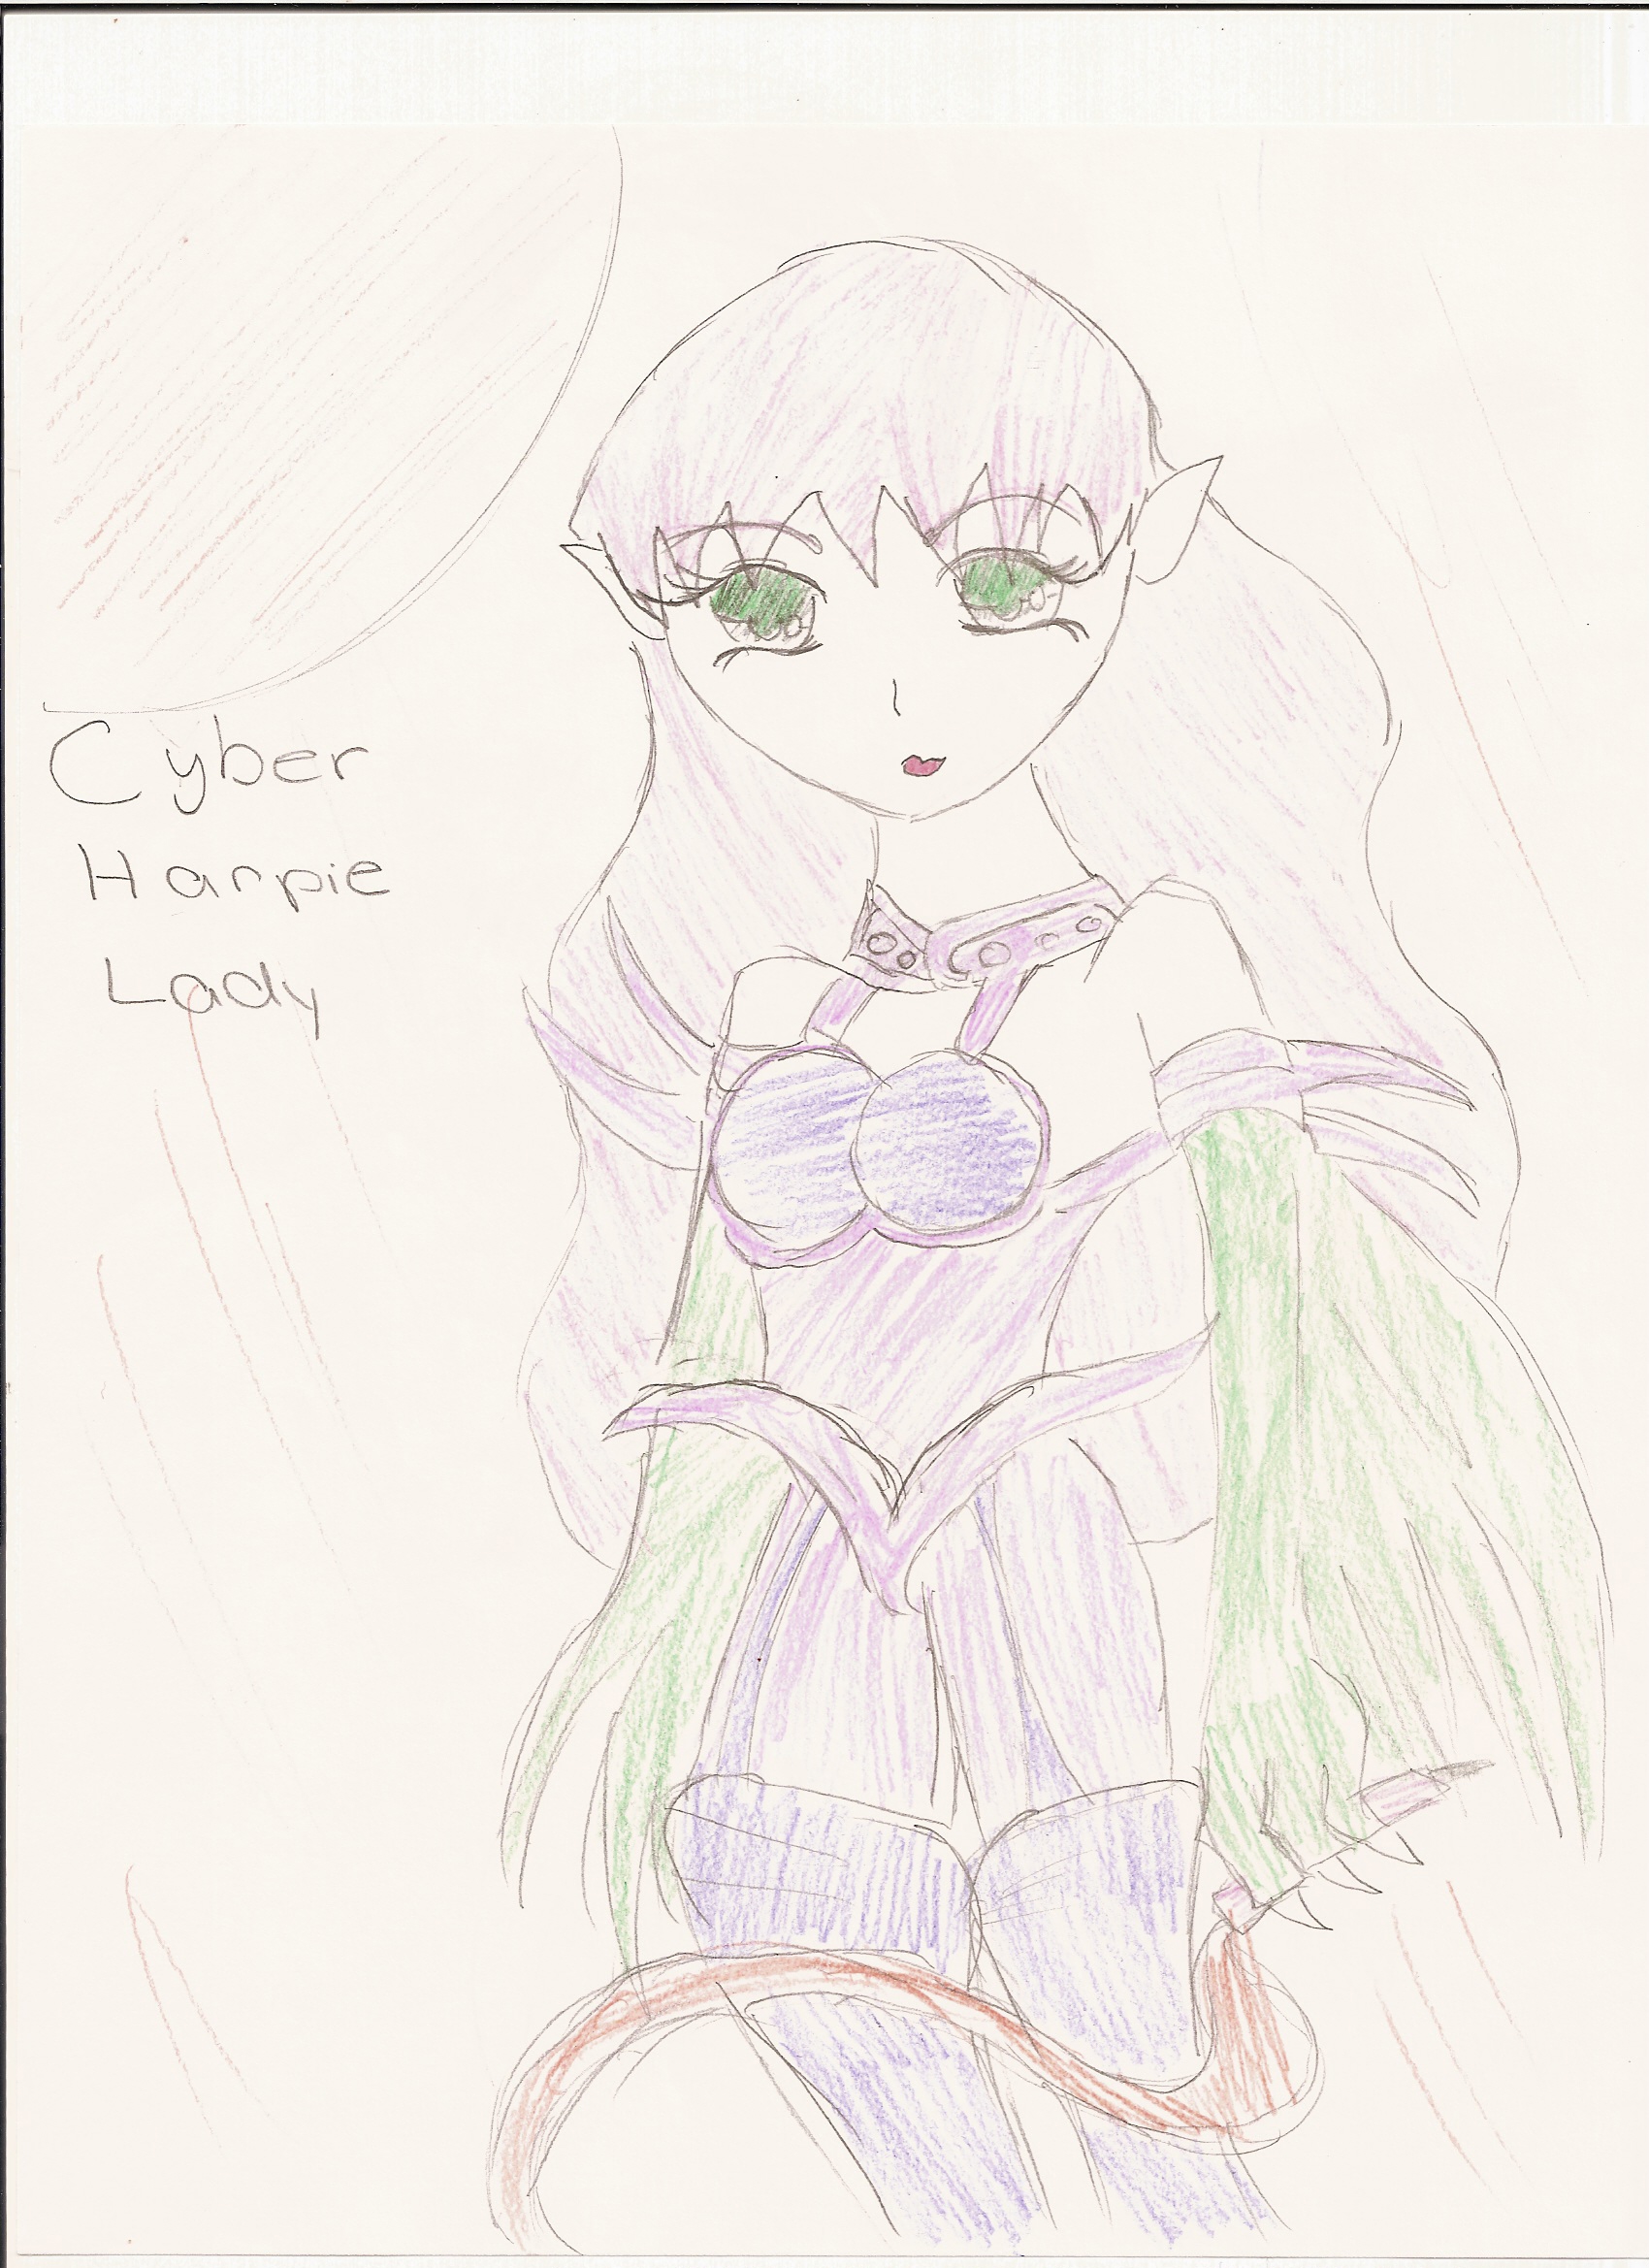 Cyber Harpie Lady by Kimikoprincesspancho